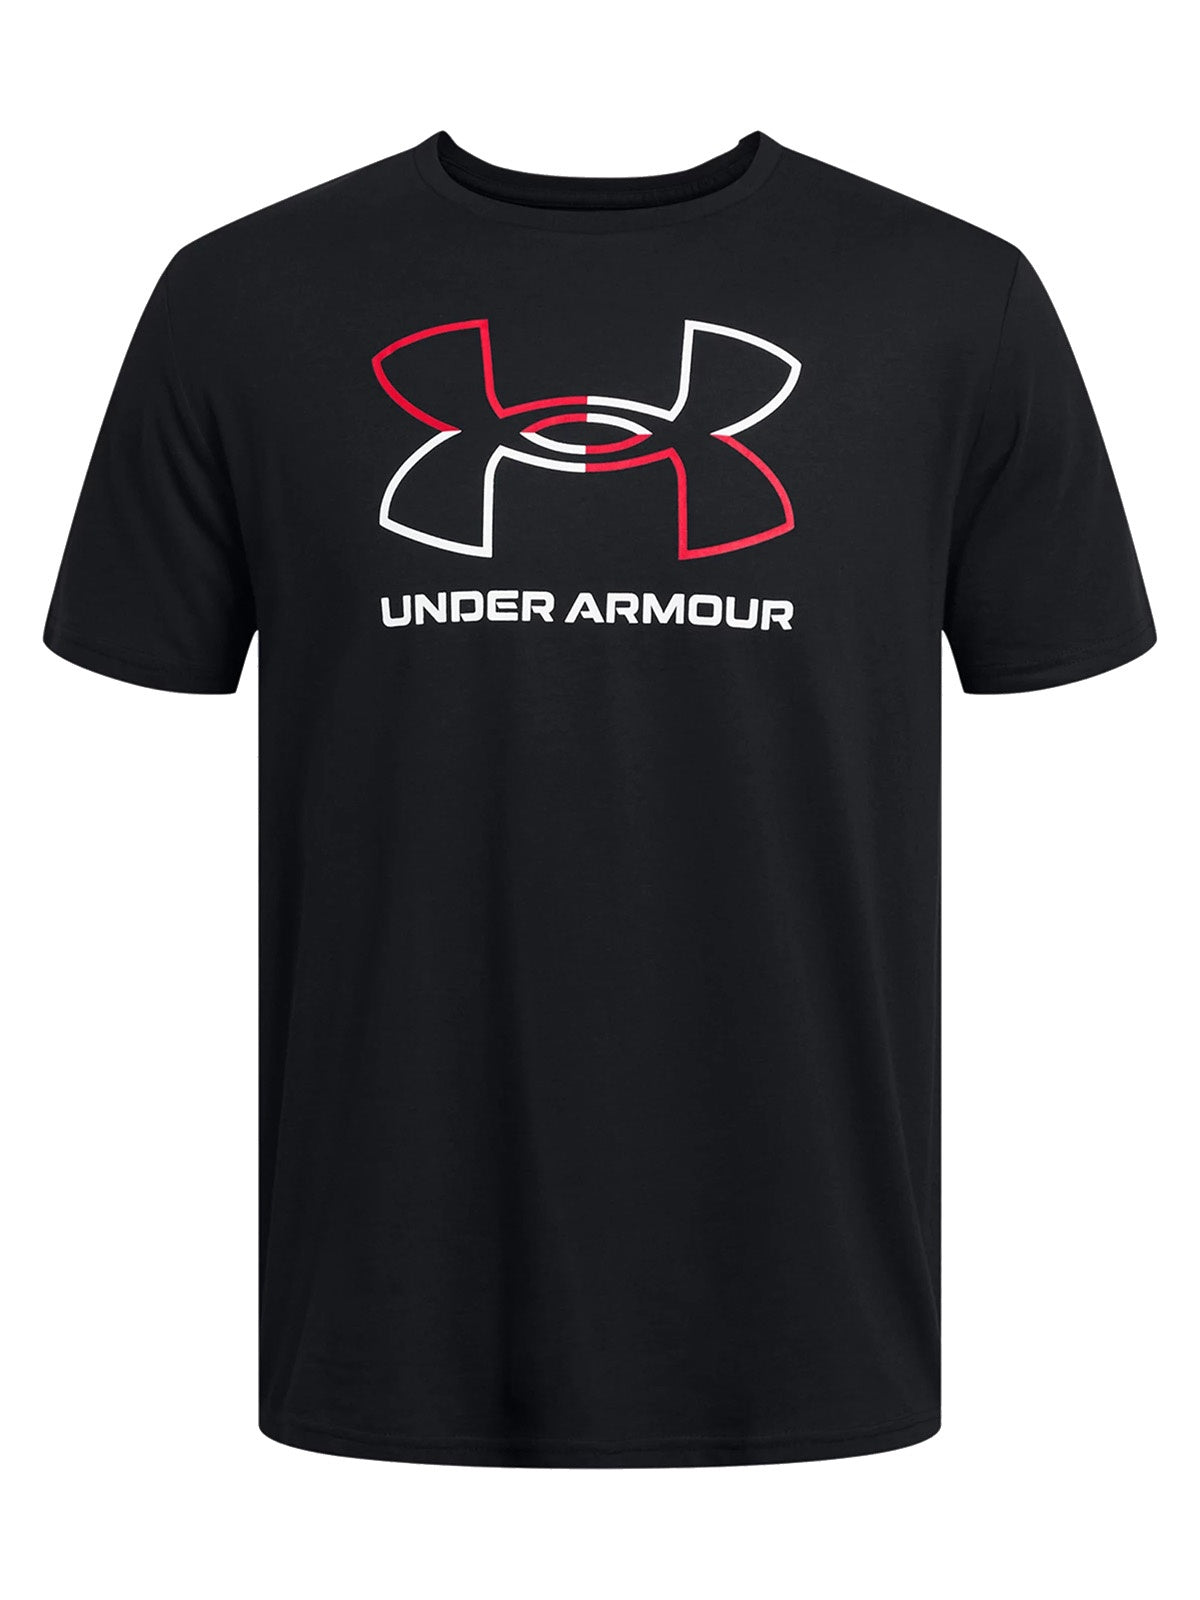 T-shirt Uomo Under Armour - Maglia A Maniche Corte Ua Foundation - Nero